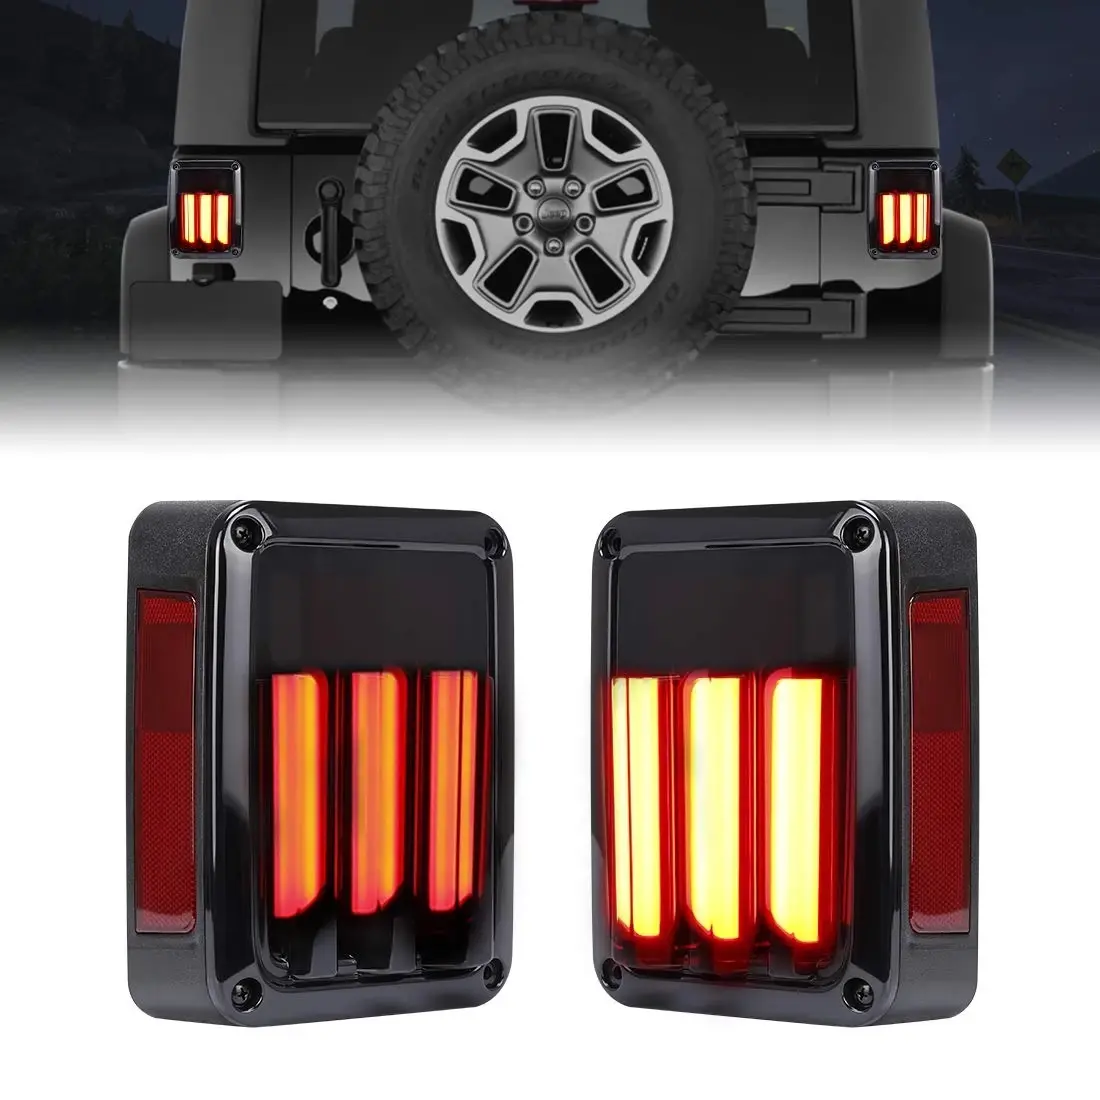 Горячая распродажа! Светодиодные задние фонари для Jeep Wrangler JK 2007-2016, задние фонари, фонари заднего хода для внедорожников